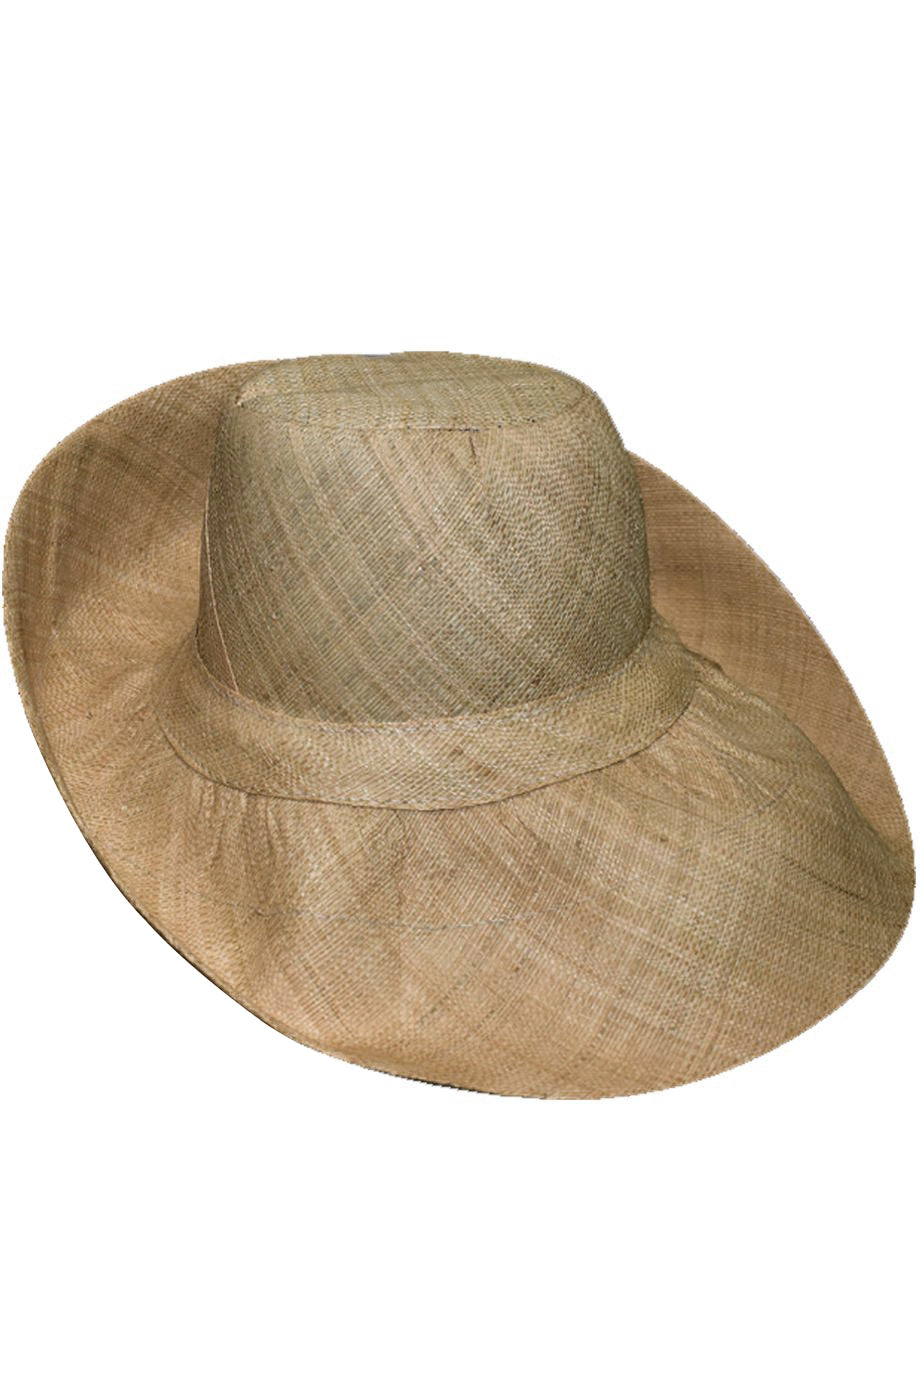 Kenzie Beige handgemaakte brede Madagascar hoed